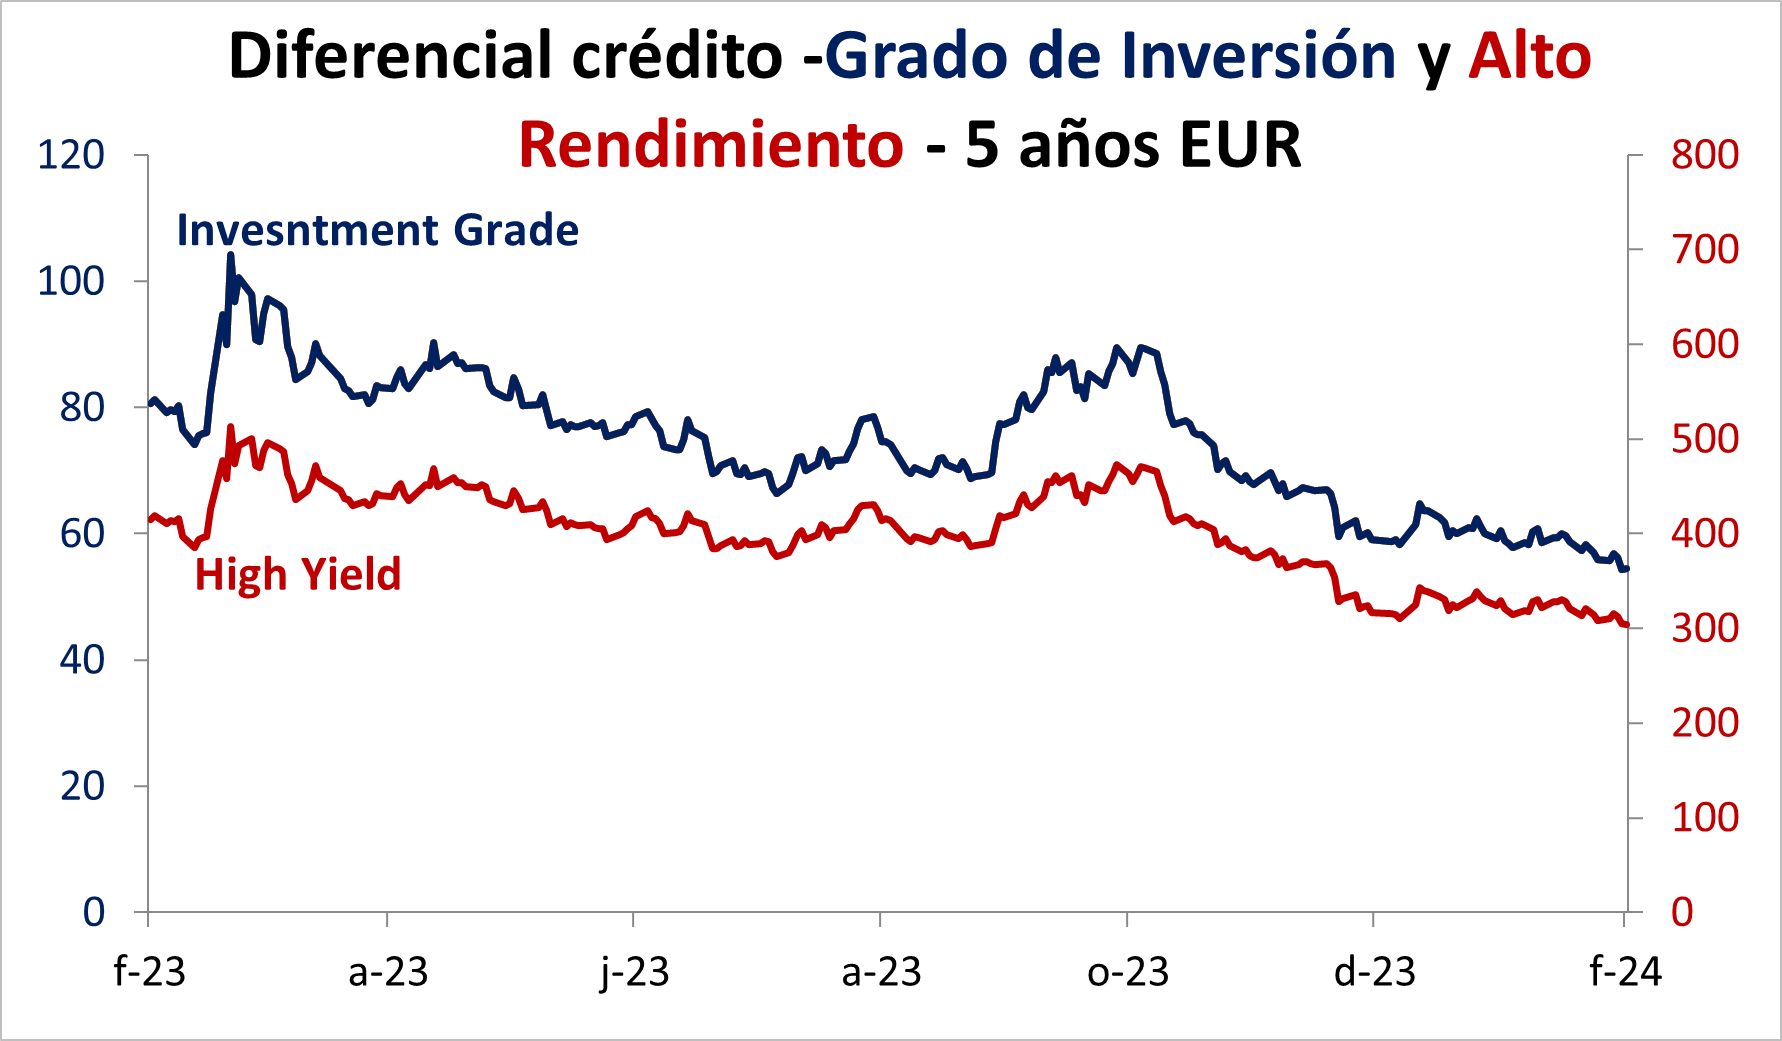 Diferencial crédito Grado de Inversión y alto rendimiento 5 años